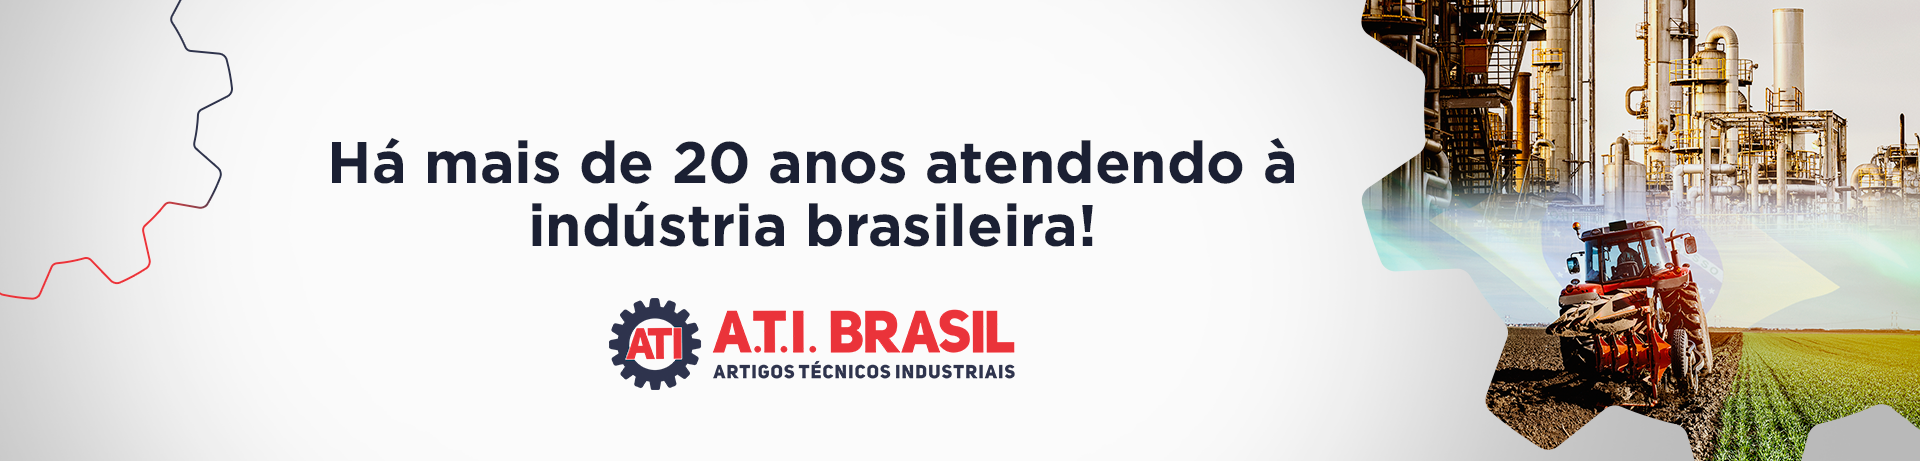 A.T.I. BRASIL - 20 ANOS NA INDÚSTRIA BRASILEIRA